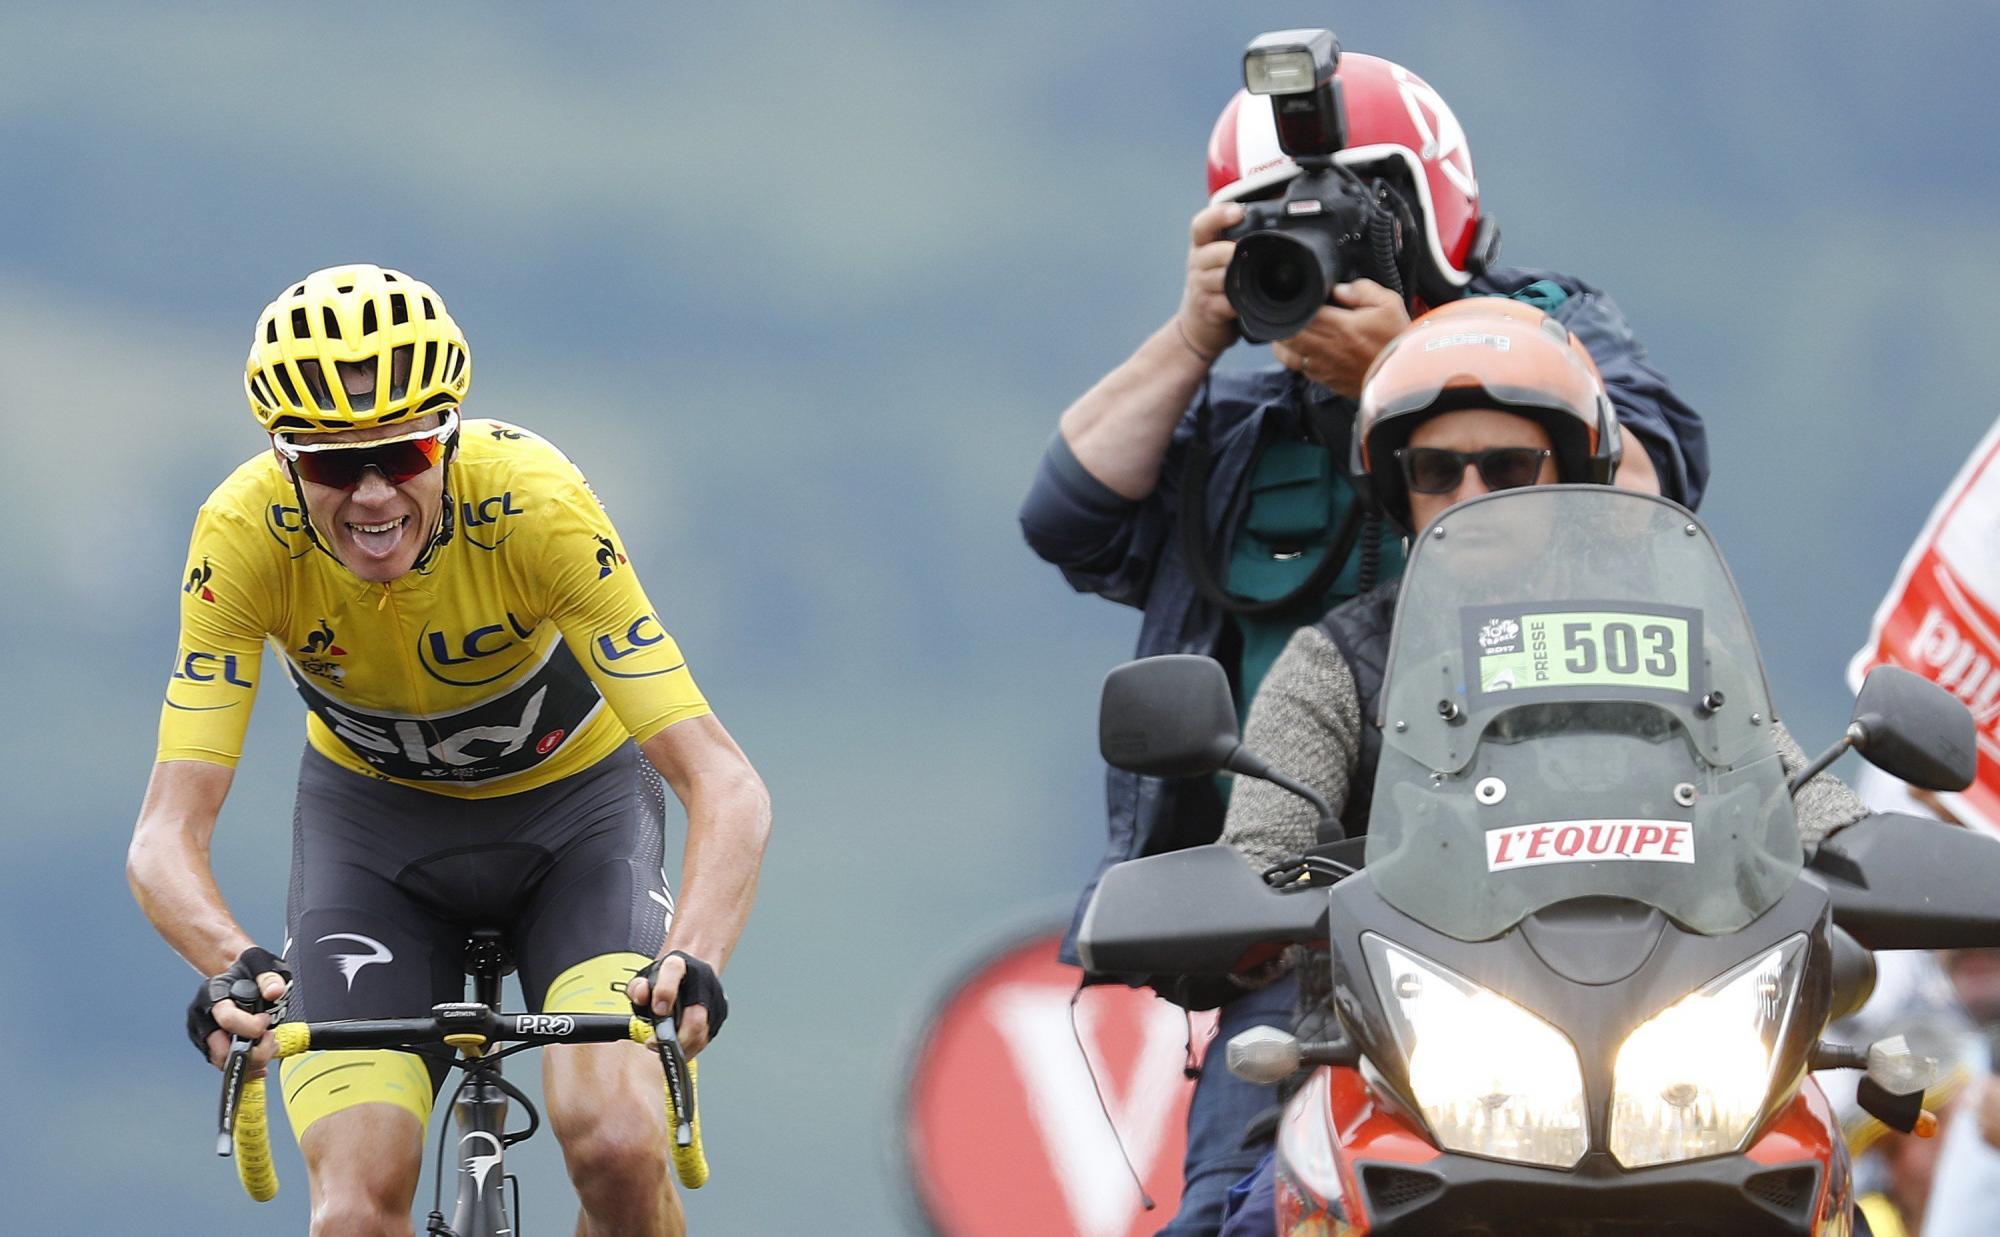 El ciclista británico Christopher Froome del Sky a su llegada a meta en la duodécima etapa del Tour de Francia, de 214,5 km, entre las localidades de Pau y Peyragudes (Francia), el 13 de julio de 2017. Va a seis segundos detrás de Aru en el liderato general individual.